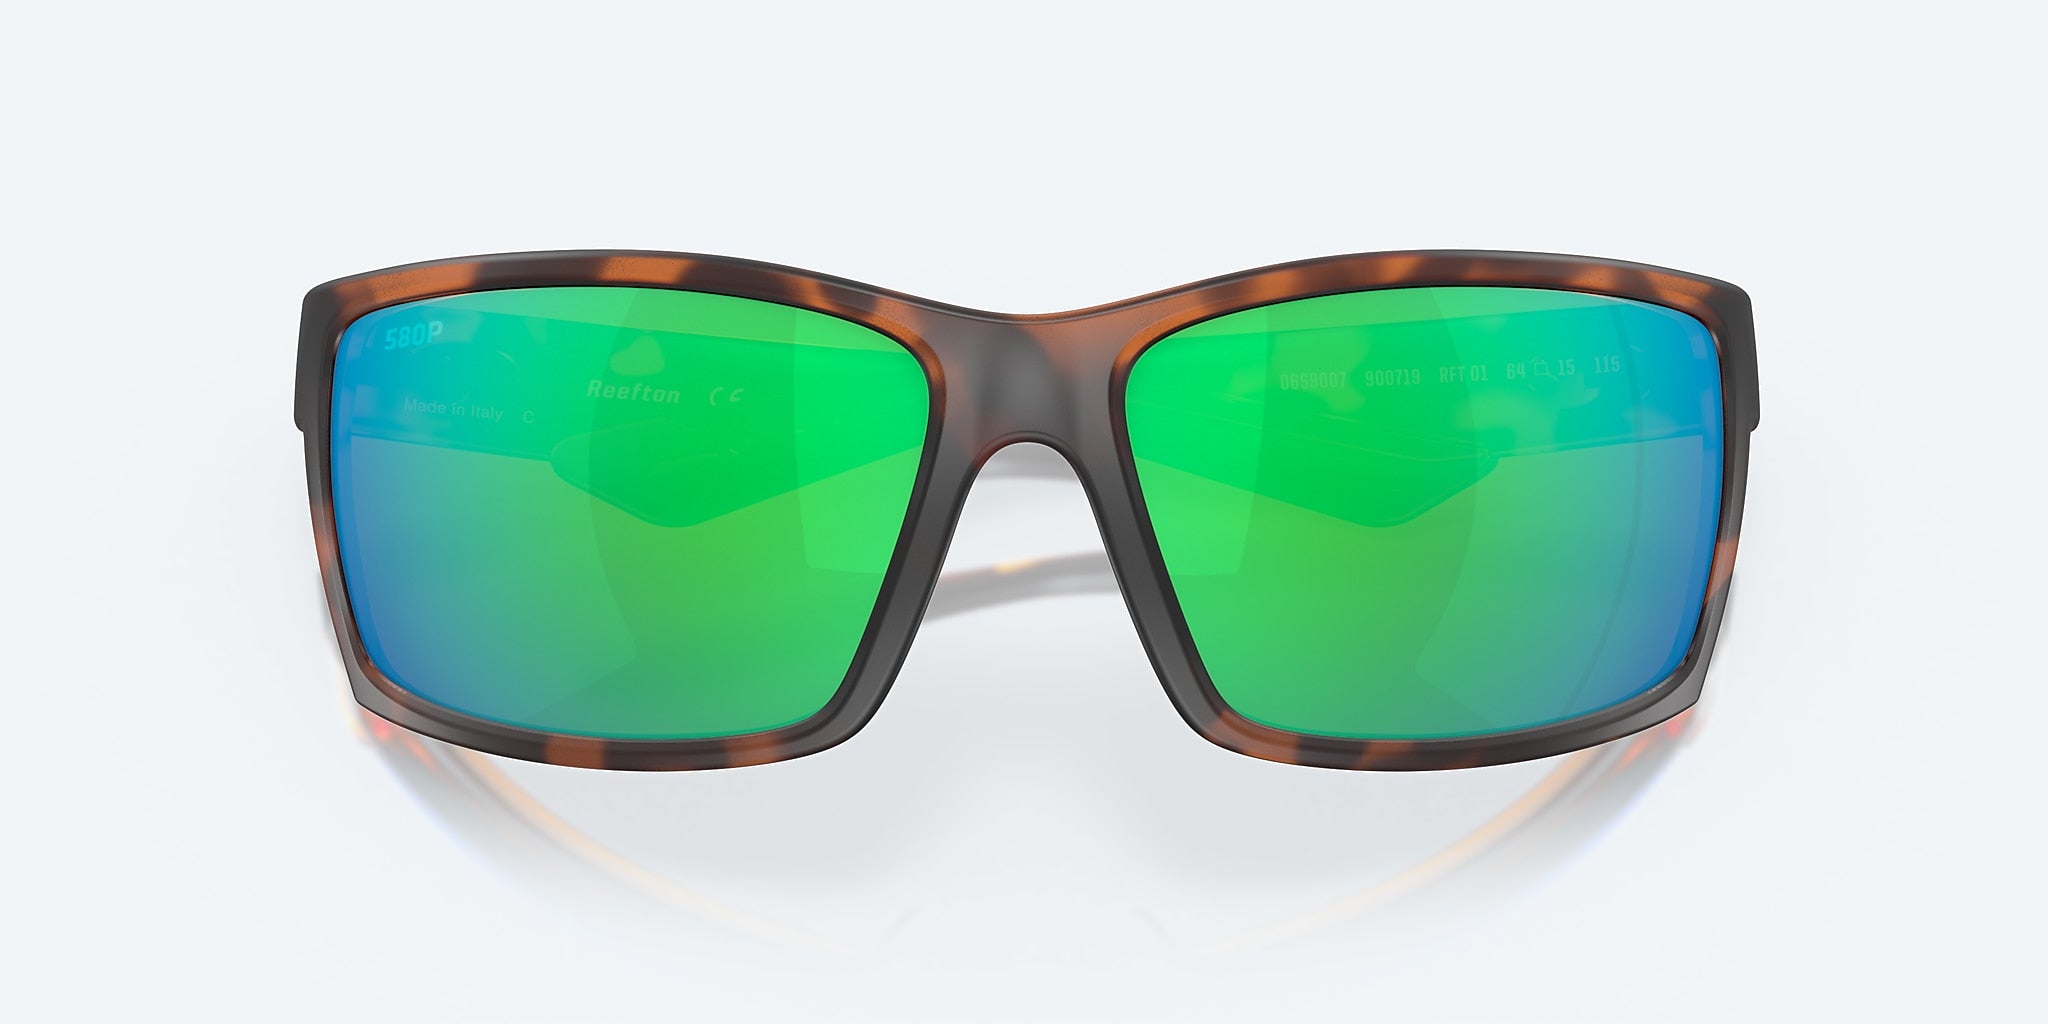 Costa Del Mar Reefton Sunglasses